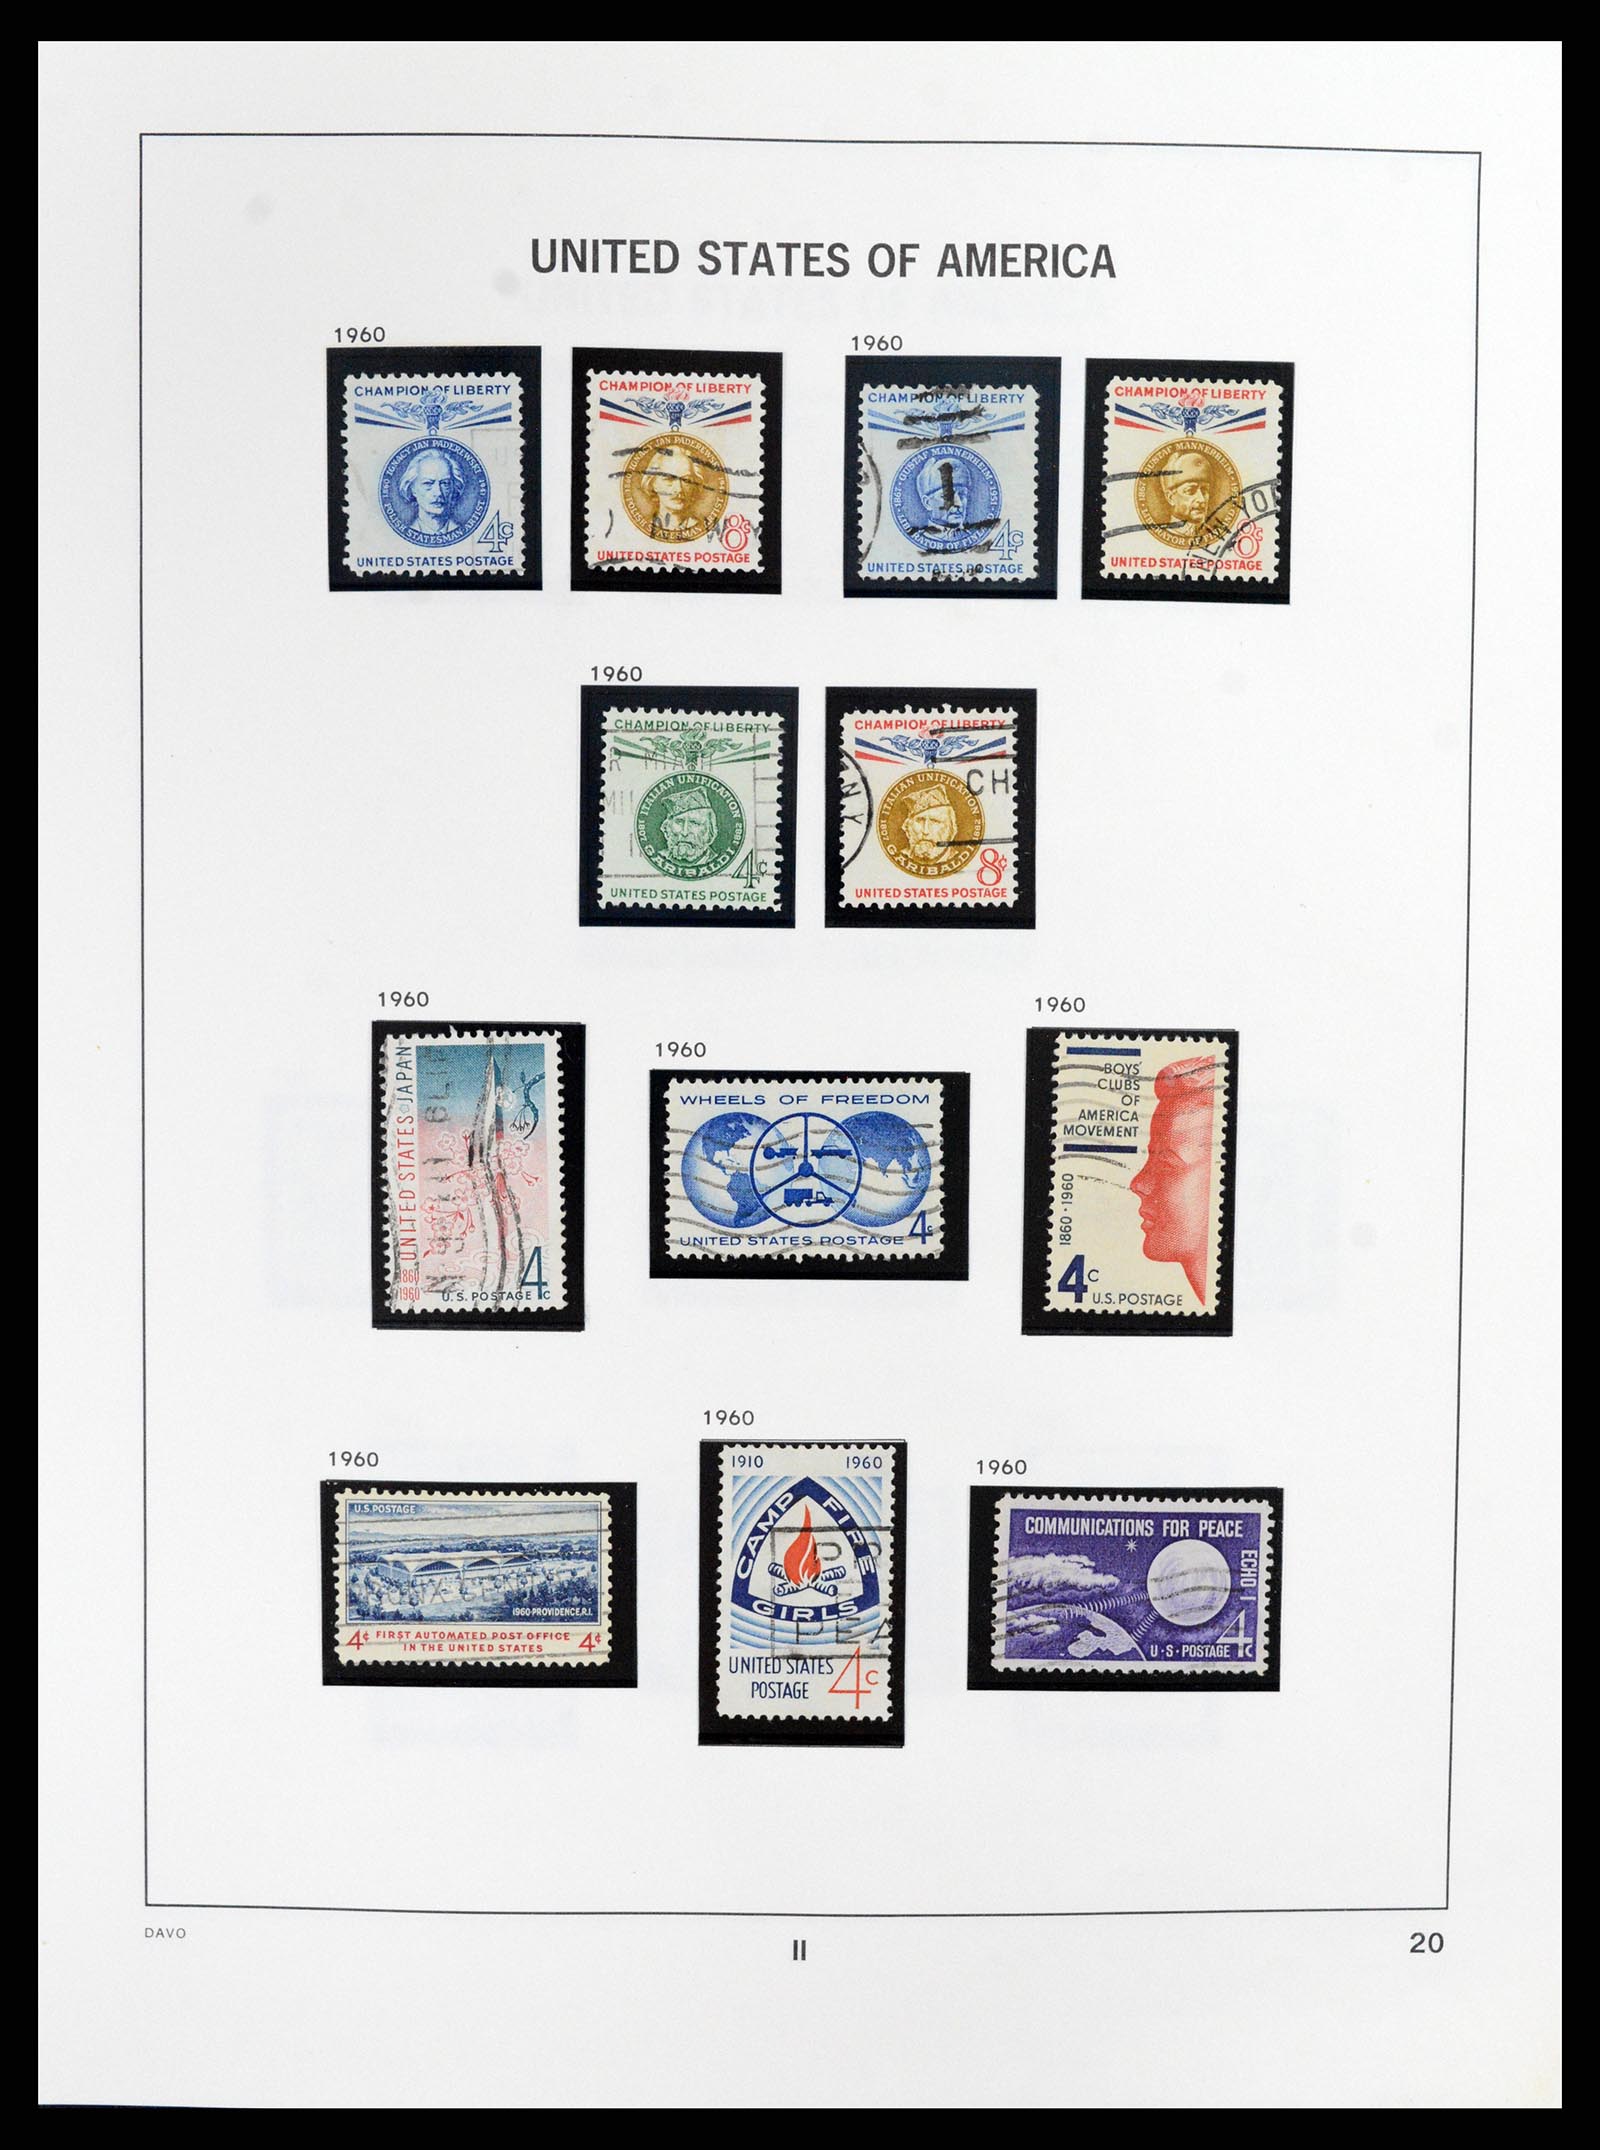 37357 020 - Stamp collection 37357 USA 1945-2009.